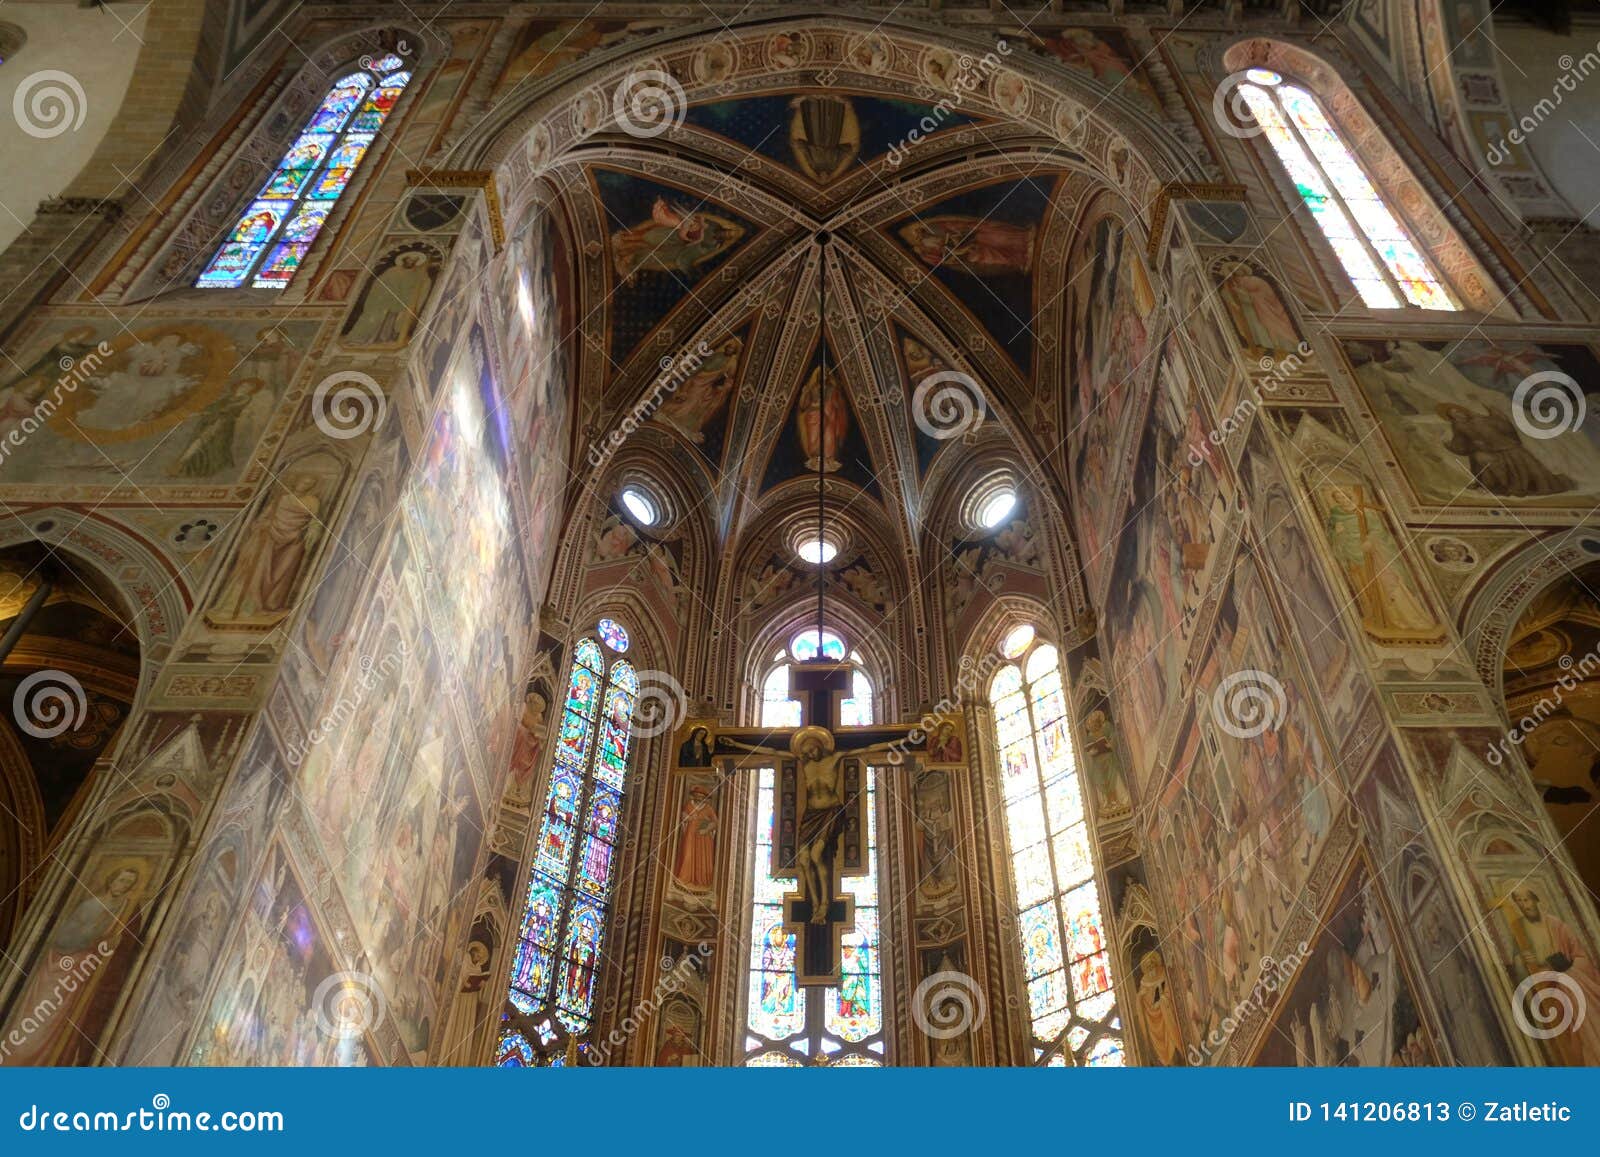 maestro di figlineÃ¢â¬â¢s painted wooden crucifix, basilica di santa croce in florence